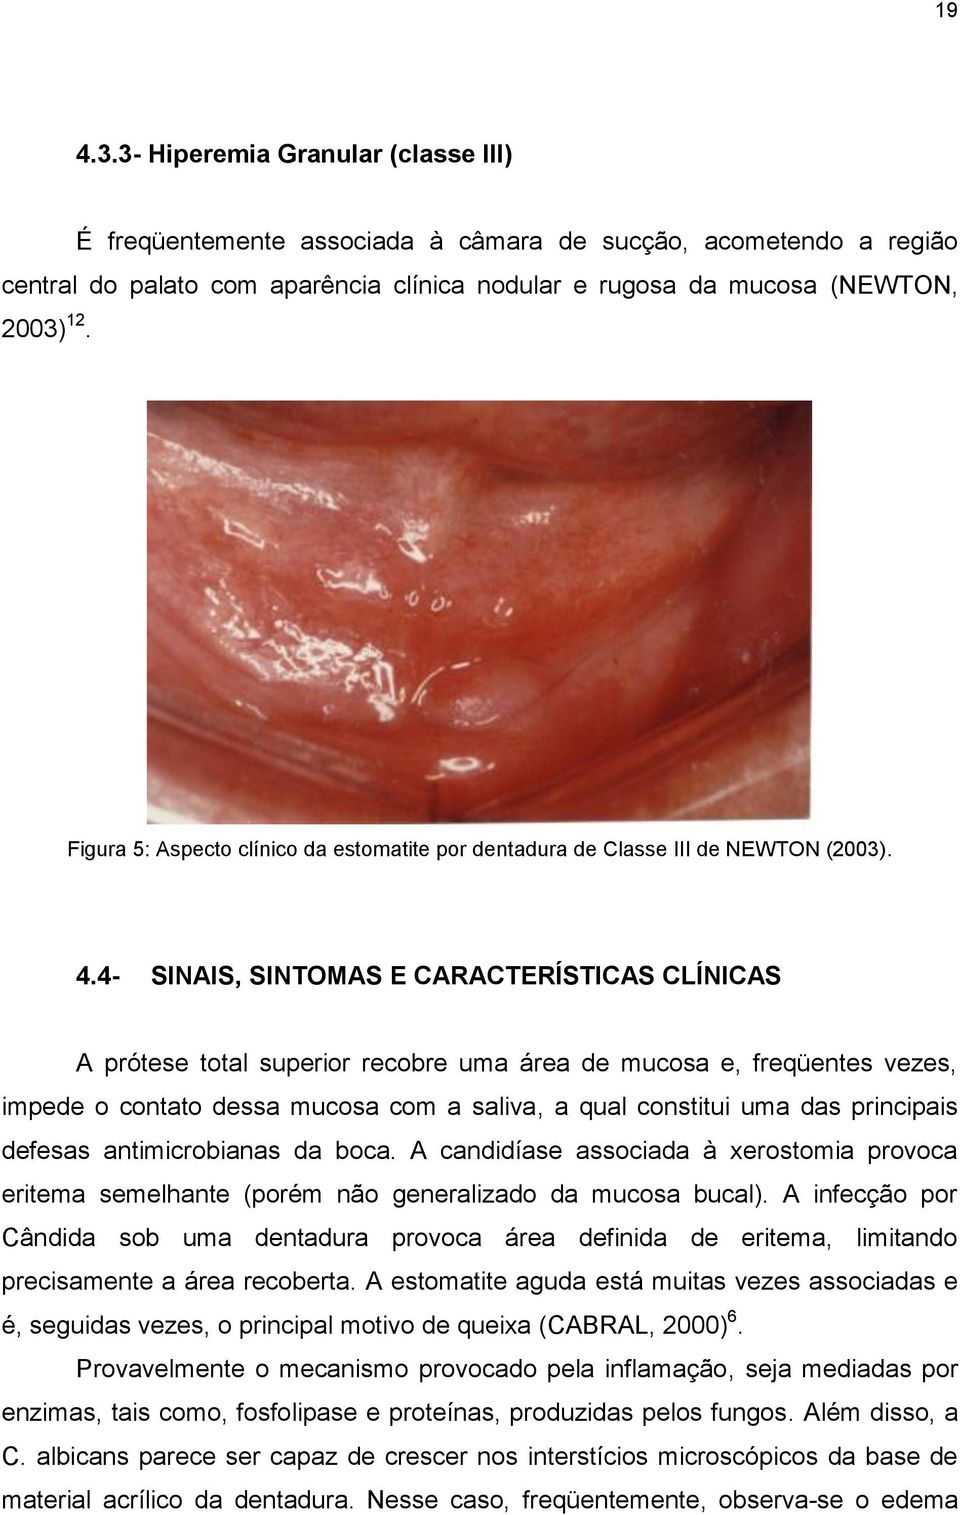 4- SINAIS, SINTOMAS E CARACTERÍSTICAS CLÍNICAS A prótese total superior recobre uma área de mucosa e, freqüentes vezes, impede o contato dessa mucosa com a saliva, a qual constitui uma das principais